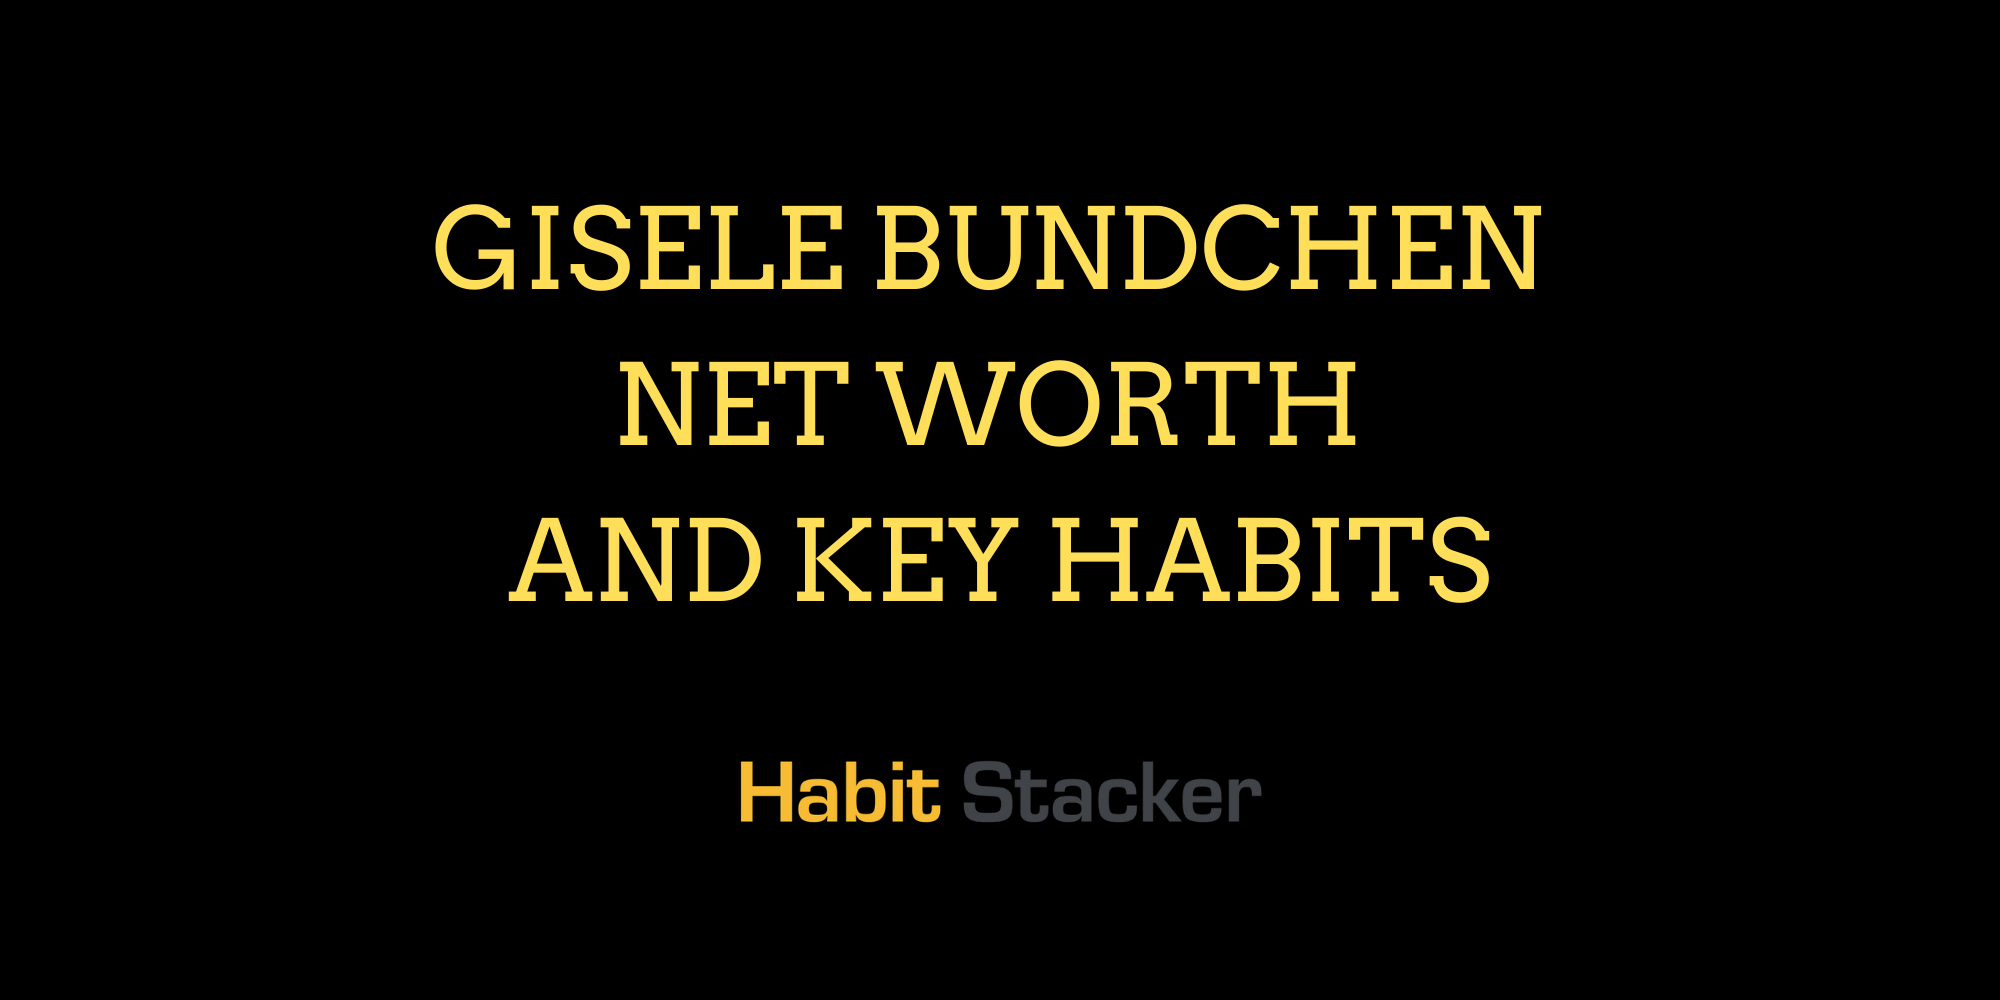 Gisele Bundchen Net Worth and Key Habits